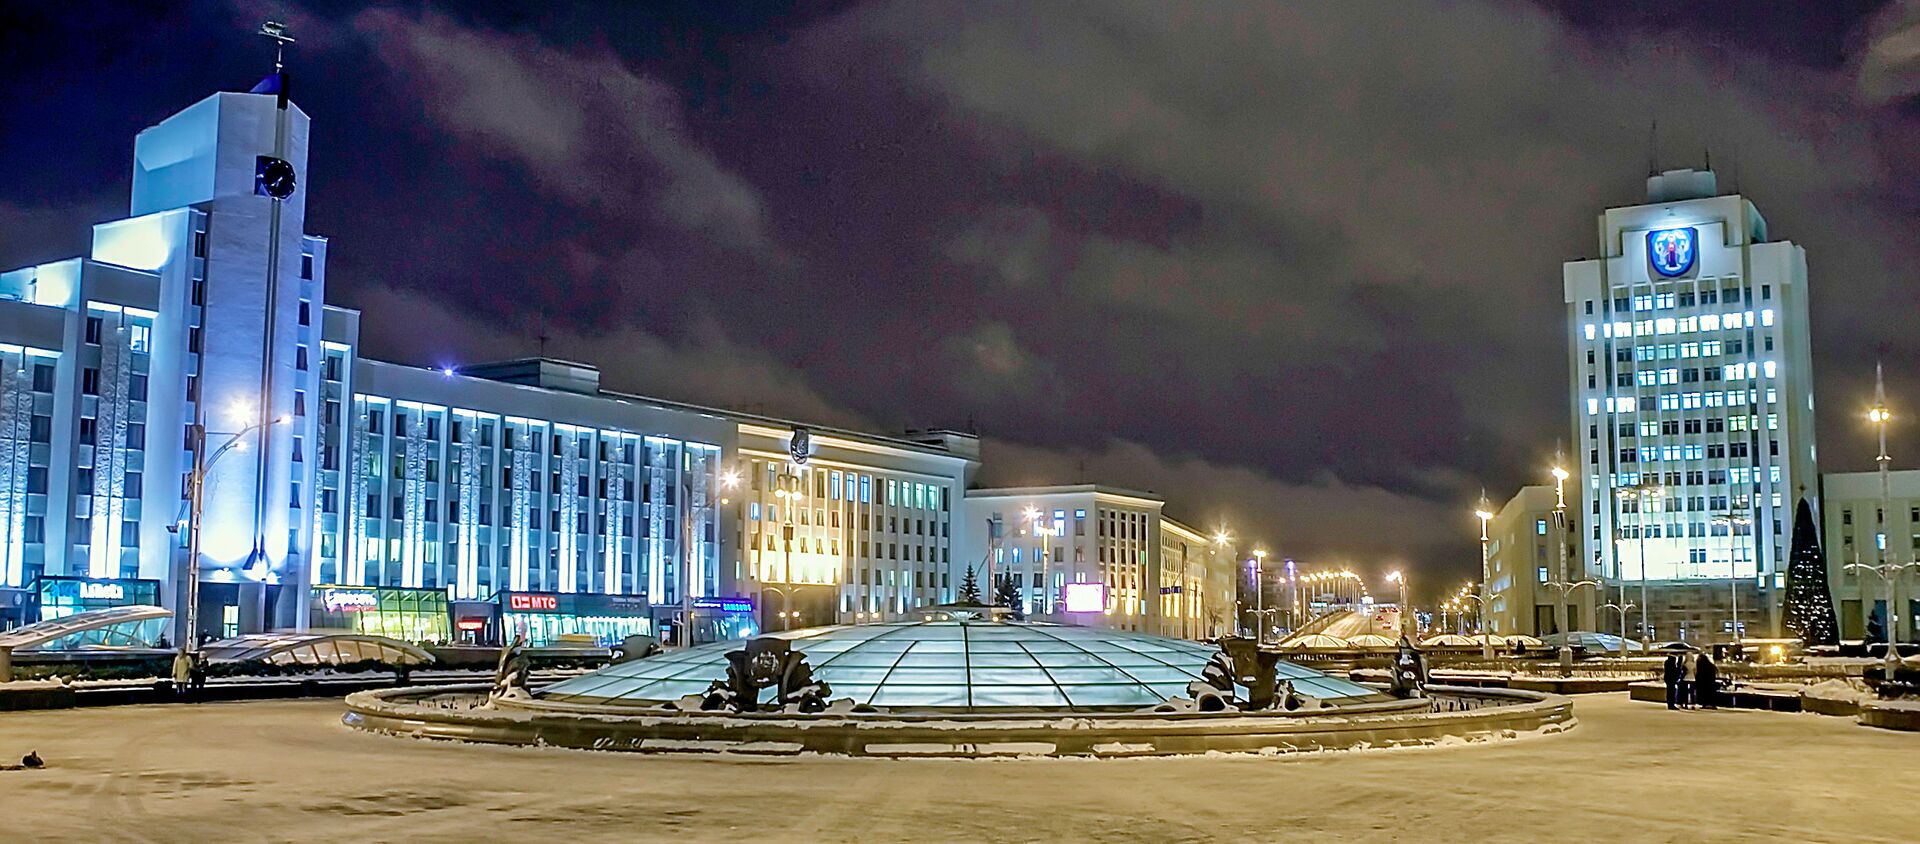 Площадь Независимости в Минске, архивное фото - Sputnik Lietuva, 1920, 01.12.2020